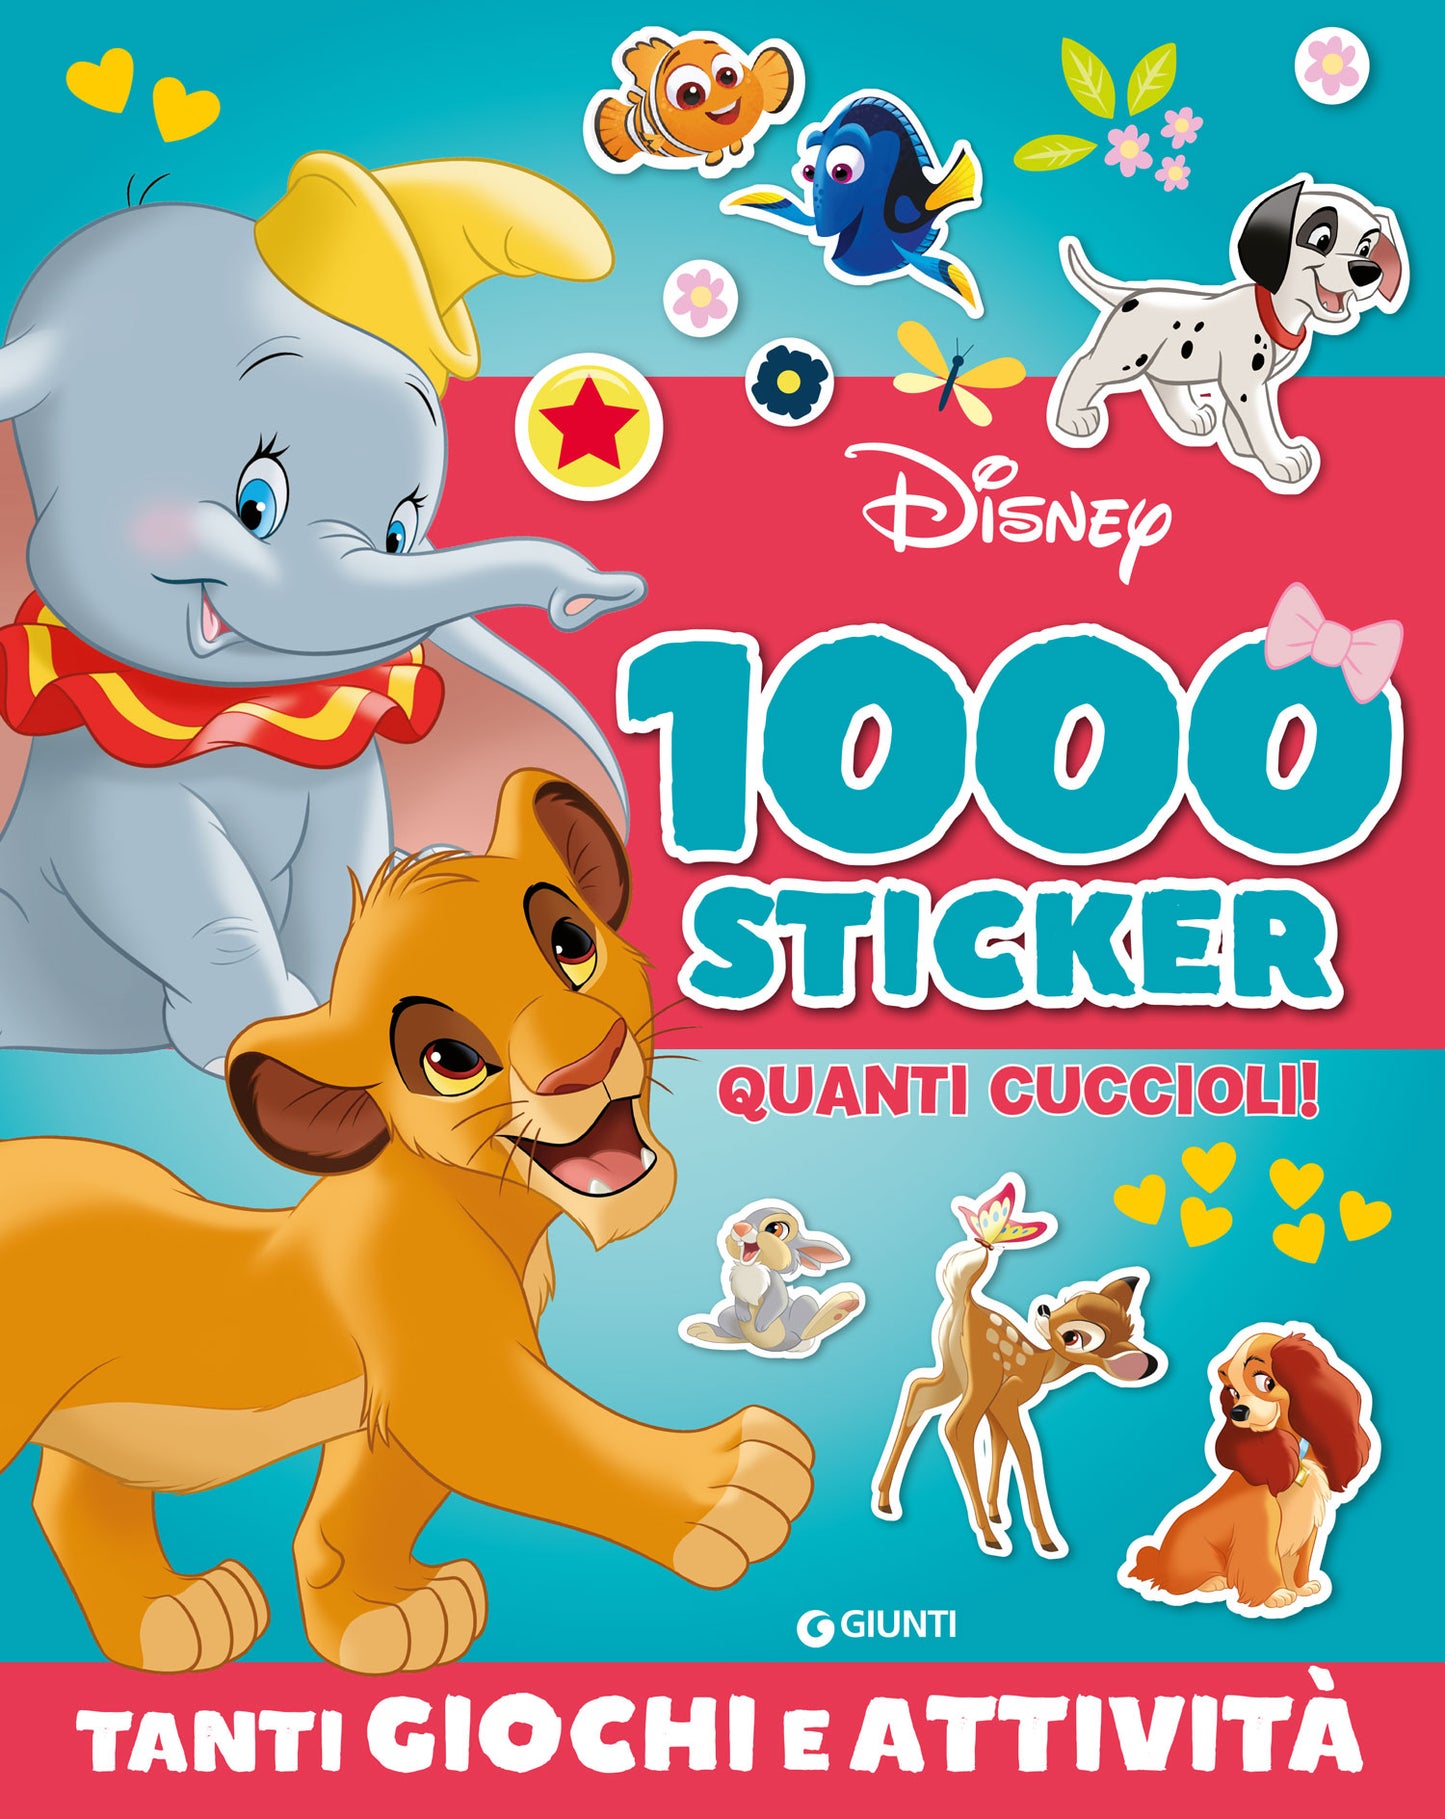 Quanti cuccioli! 1000 Sticker Disney::Tanti giochi e attività